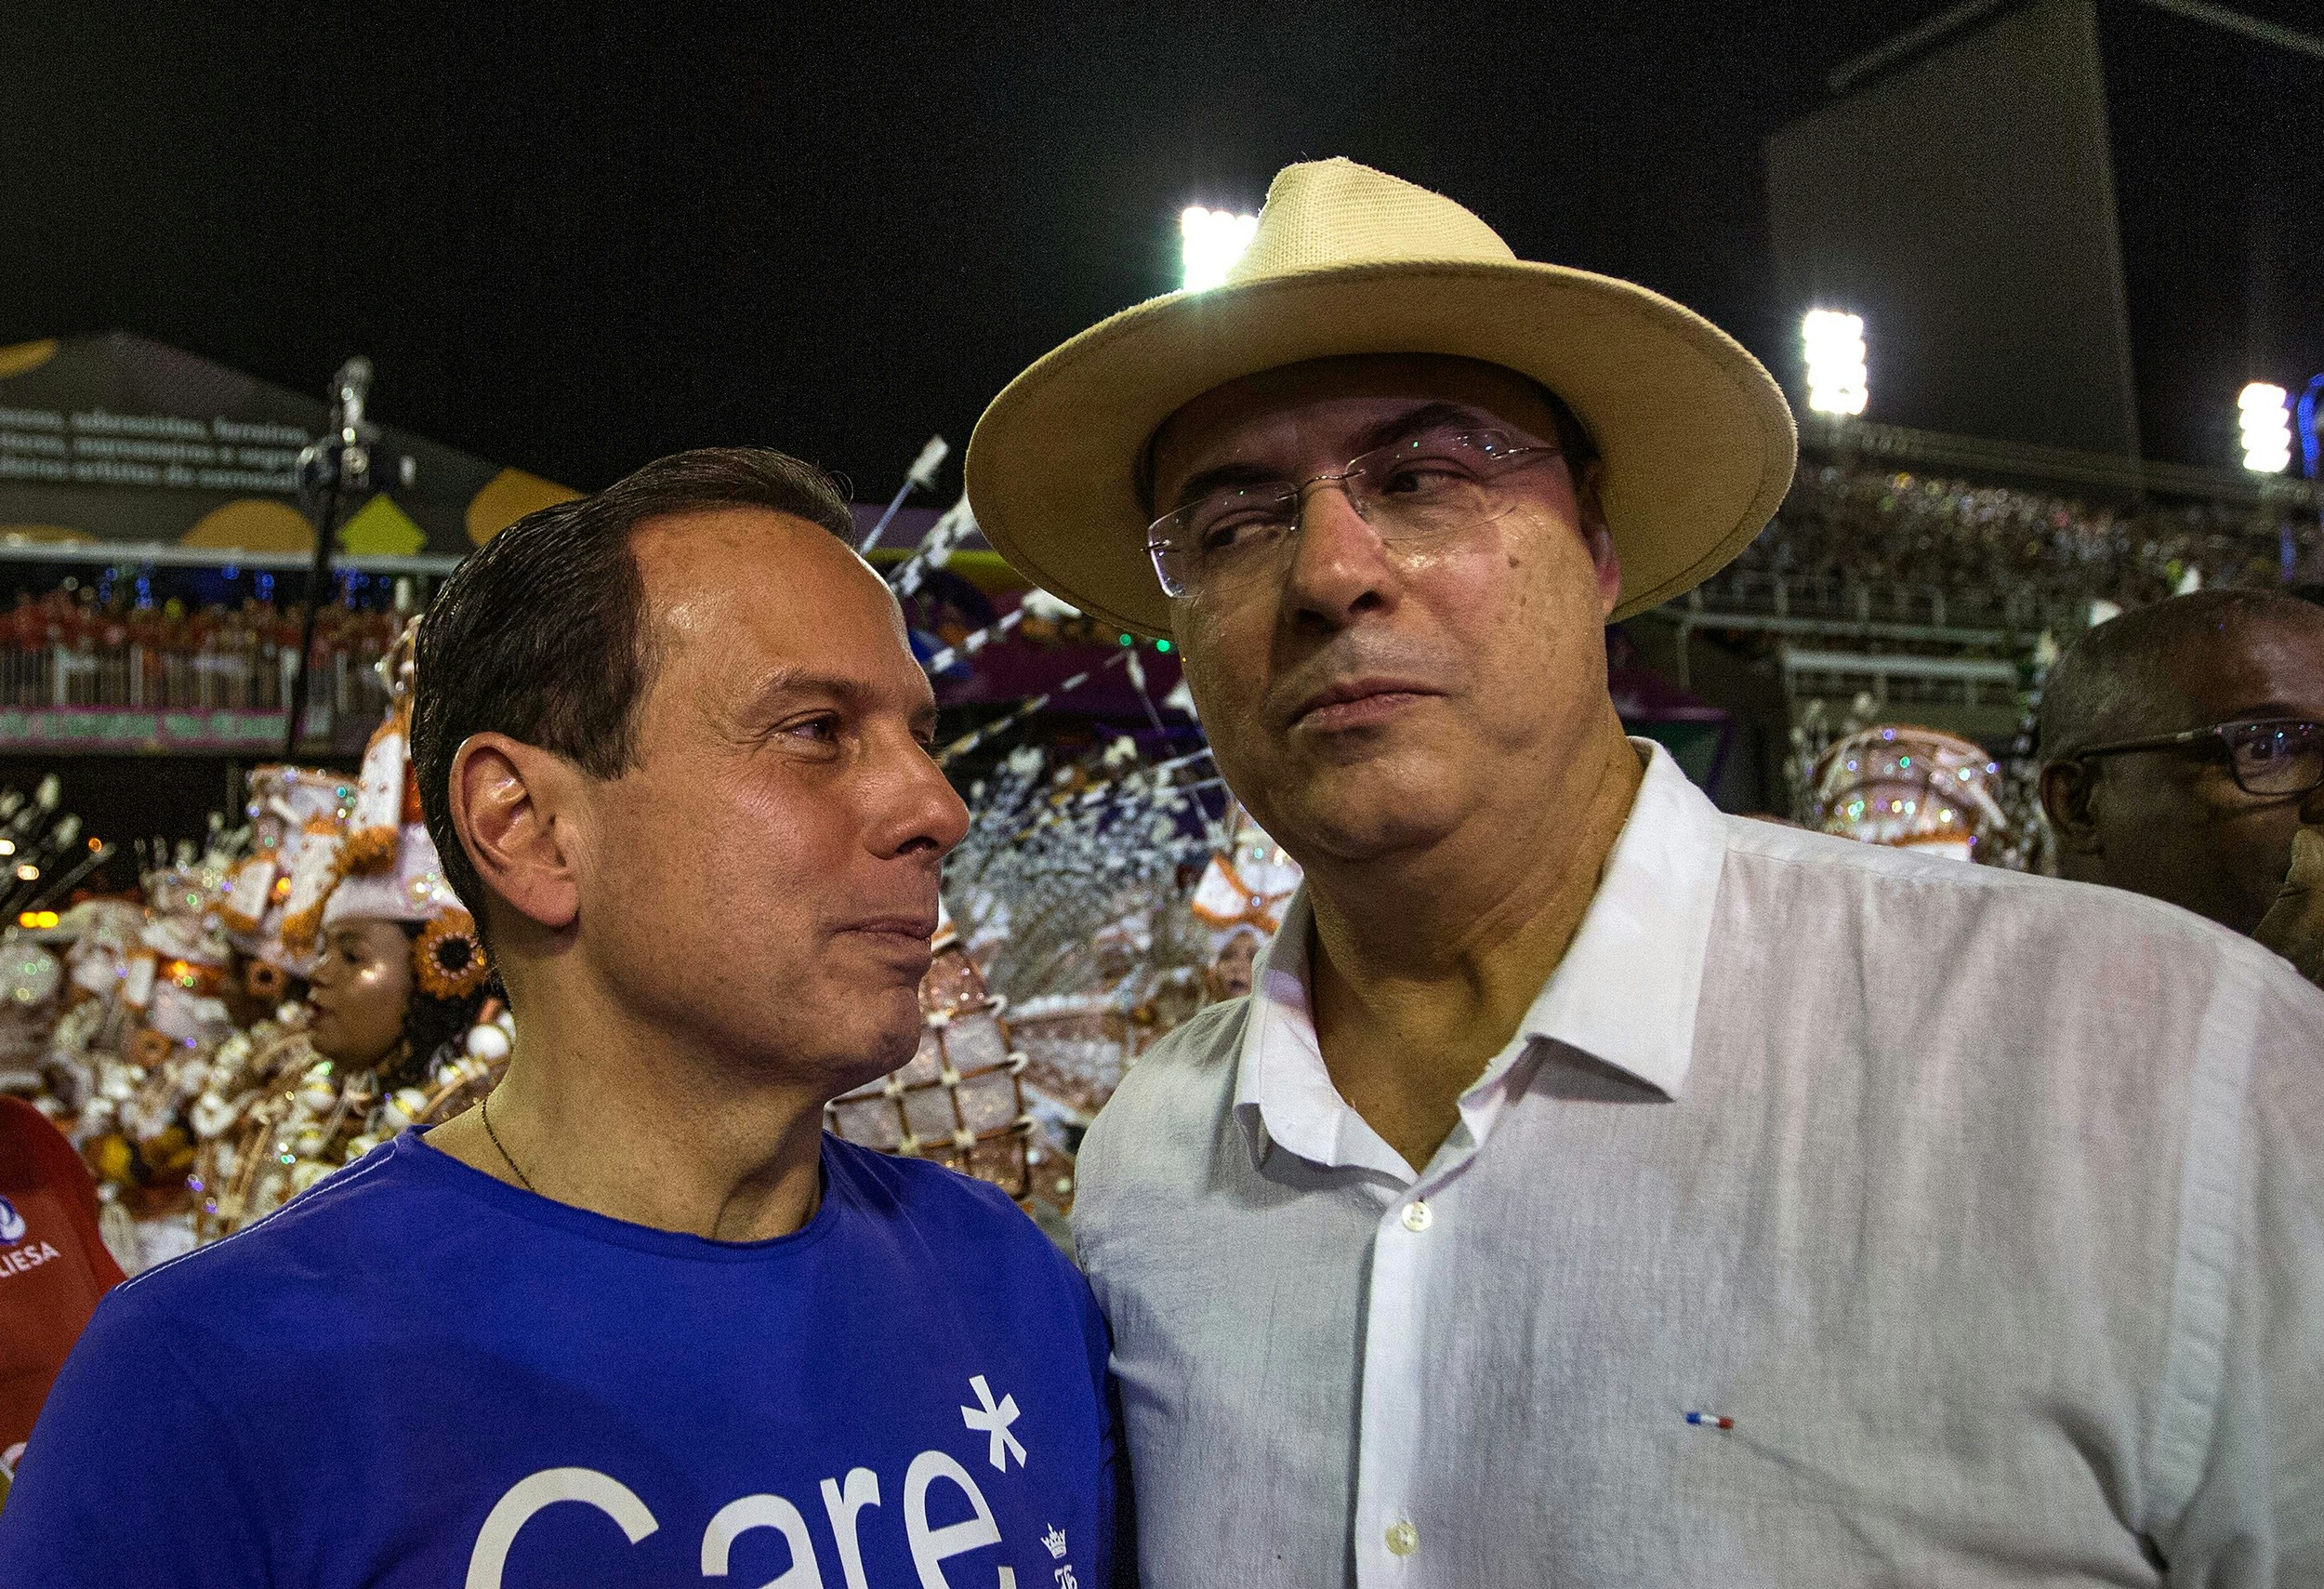 Os governadores João Doria (São Paulo) e Wilson Witzel (Rio de Janeiro) conversam em camarote da Sapucaí durante os desfiles das escolas de samba do Carnaval carioca.